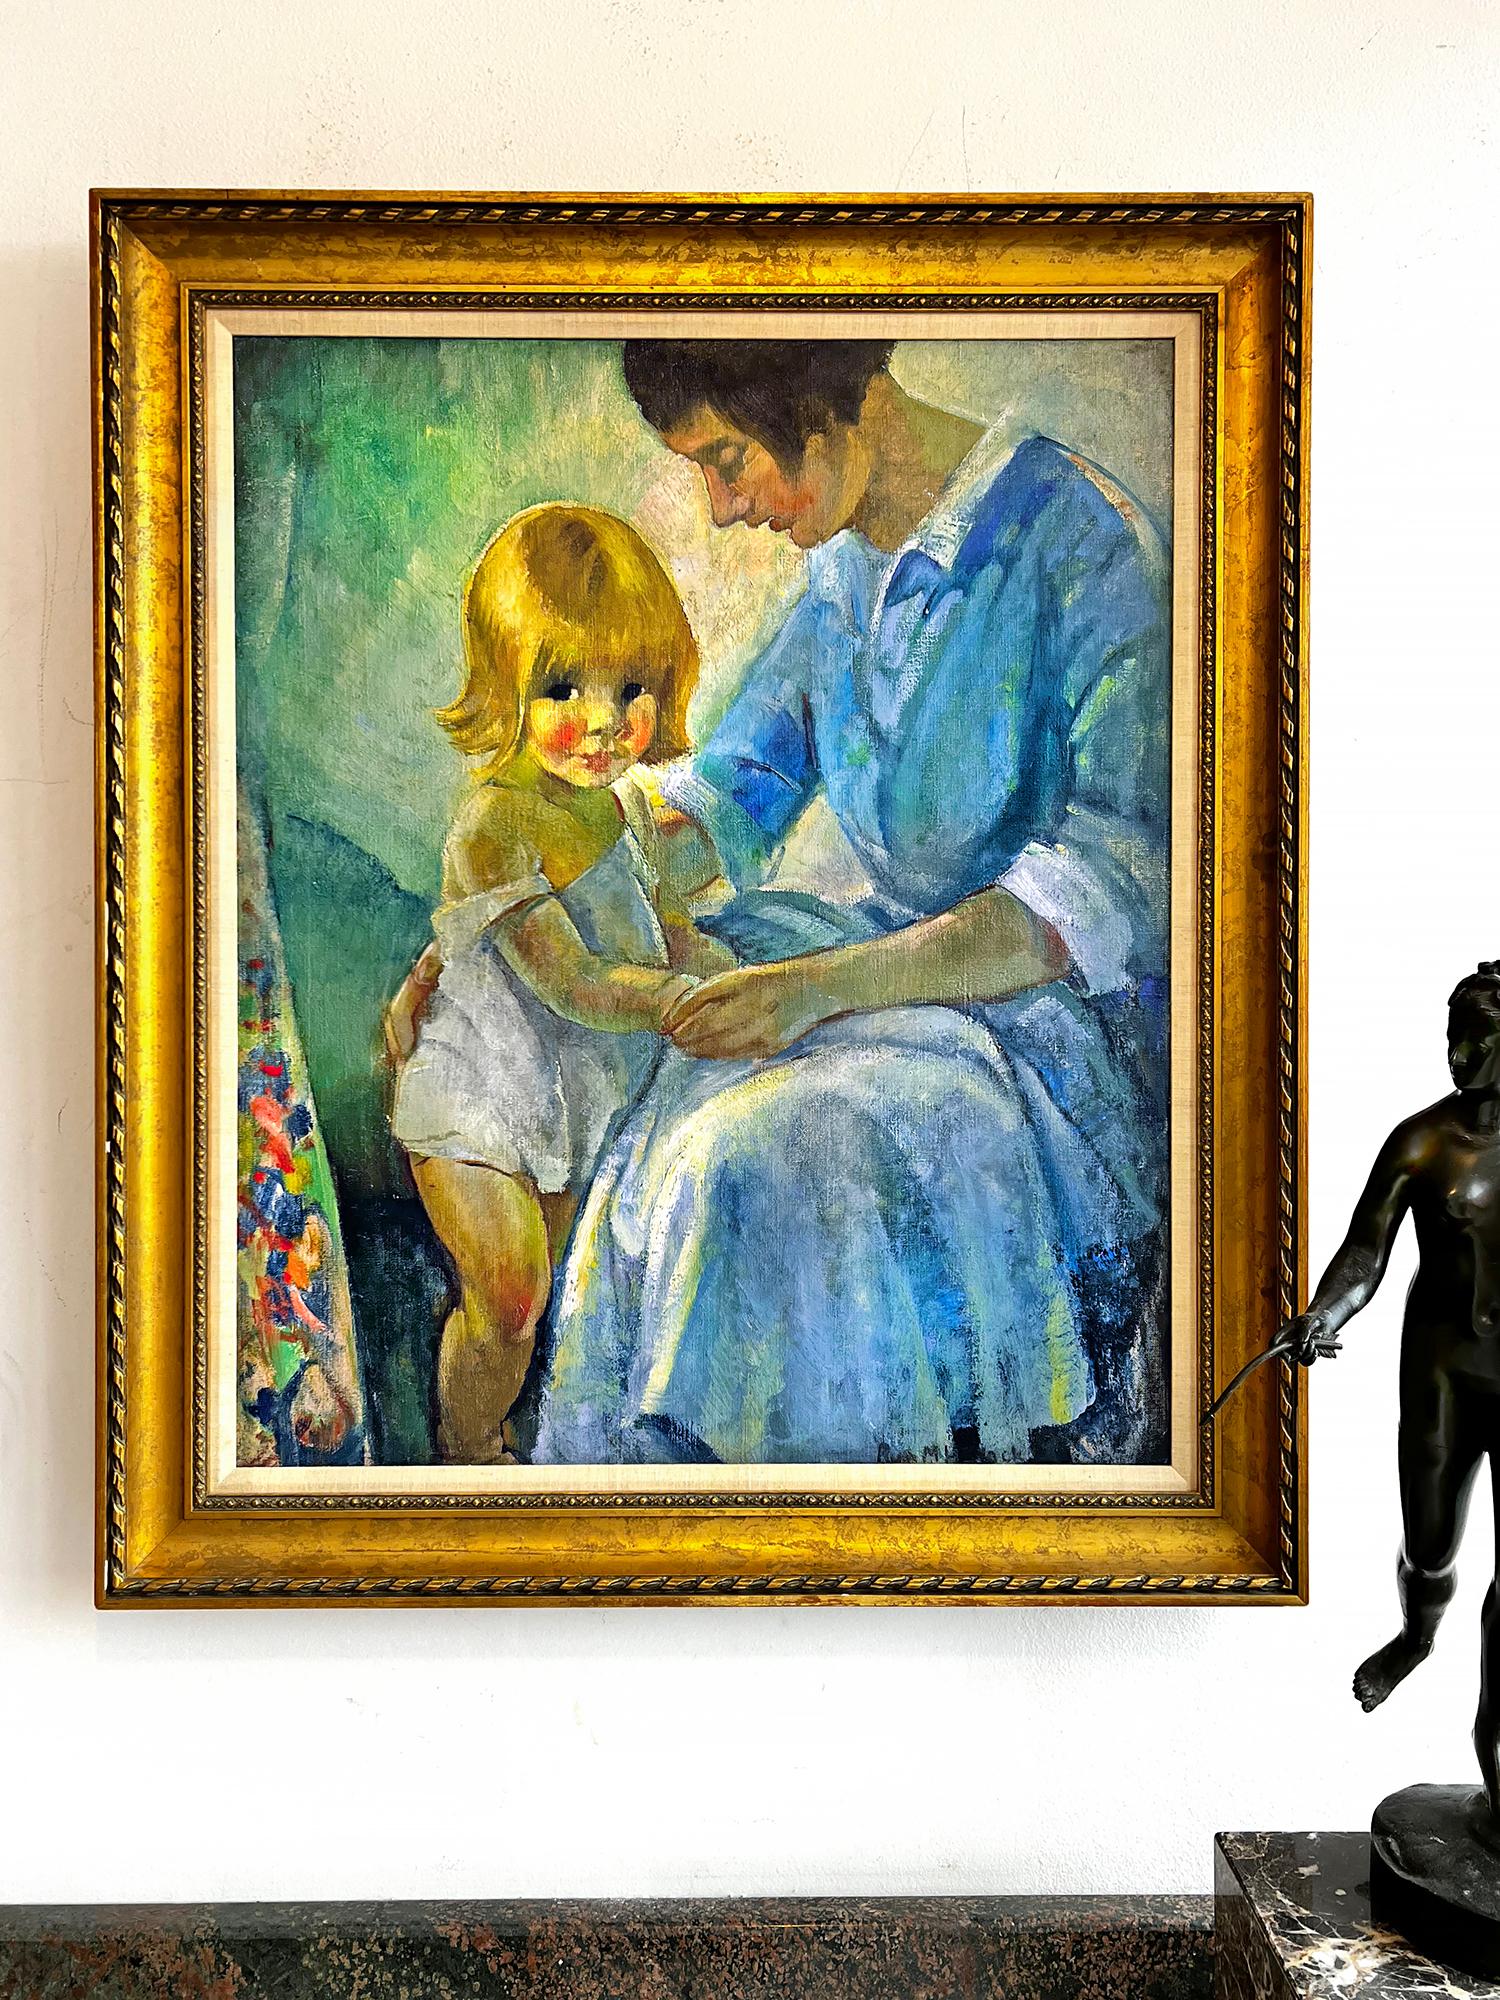 Die Illustratorin des Goldenen Zeitalters, Ruth Mary Hallock, malt ein einfühlsames, herzerwärmendes Porträt von Mutter und Kind in einem postimpressionistischen Stil. Reich gesättigte Farbtöne und gestische Pinselstriche kennzeichnen das Werk. Man